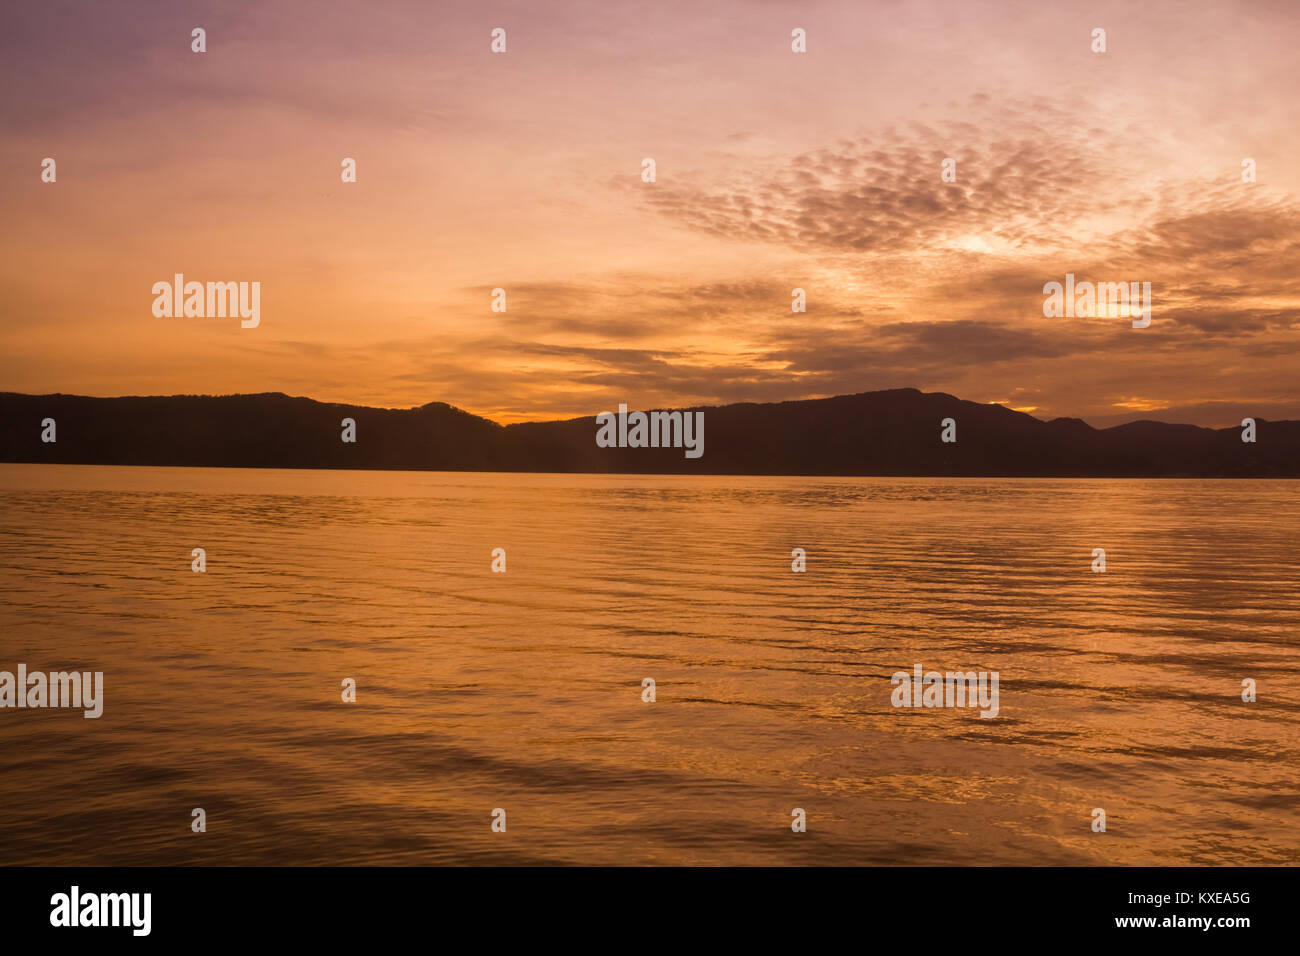 Sunset Sunrise with reflections at Lake Toba, Samosir Island, Indonesia. Stock Photo